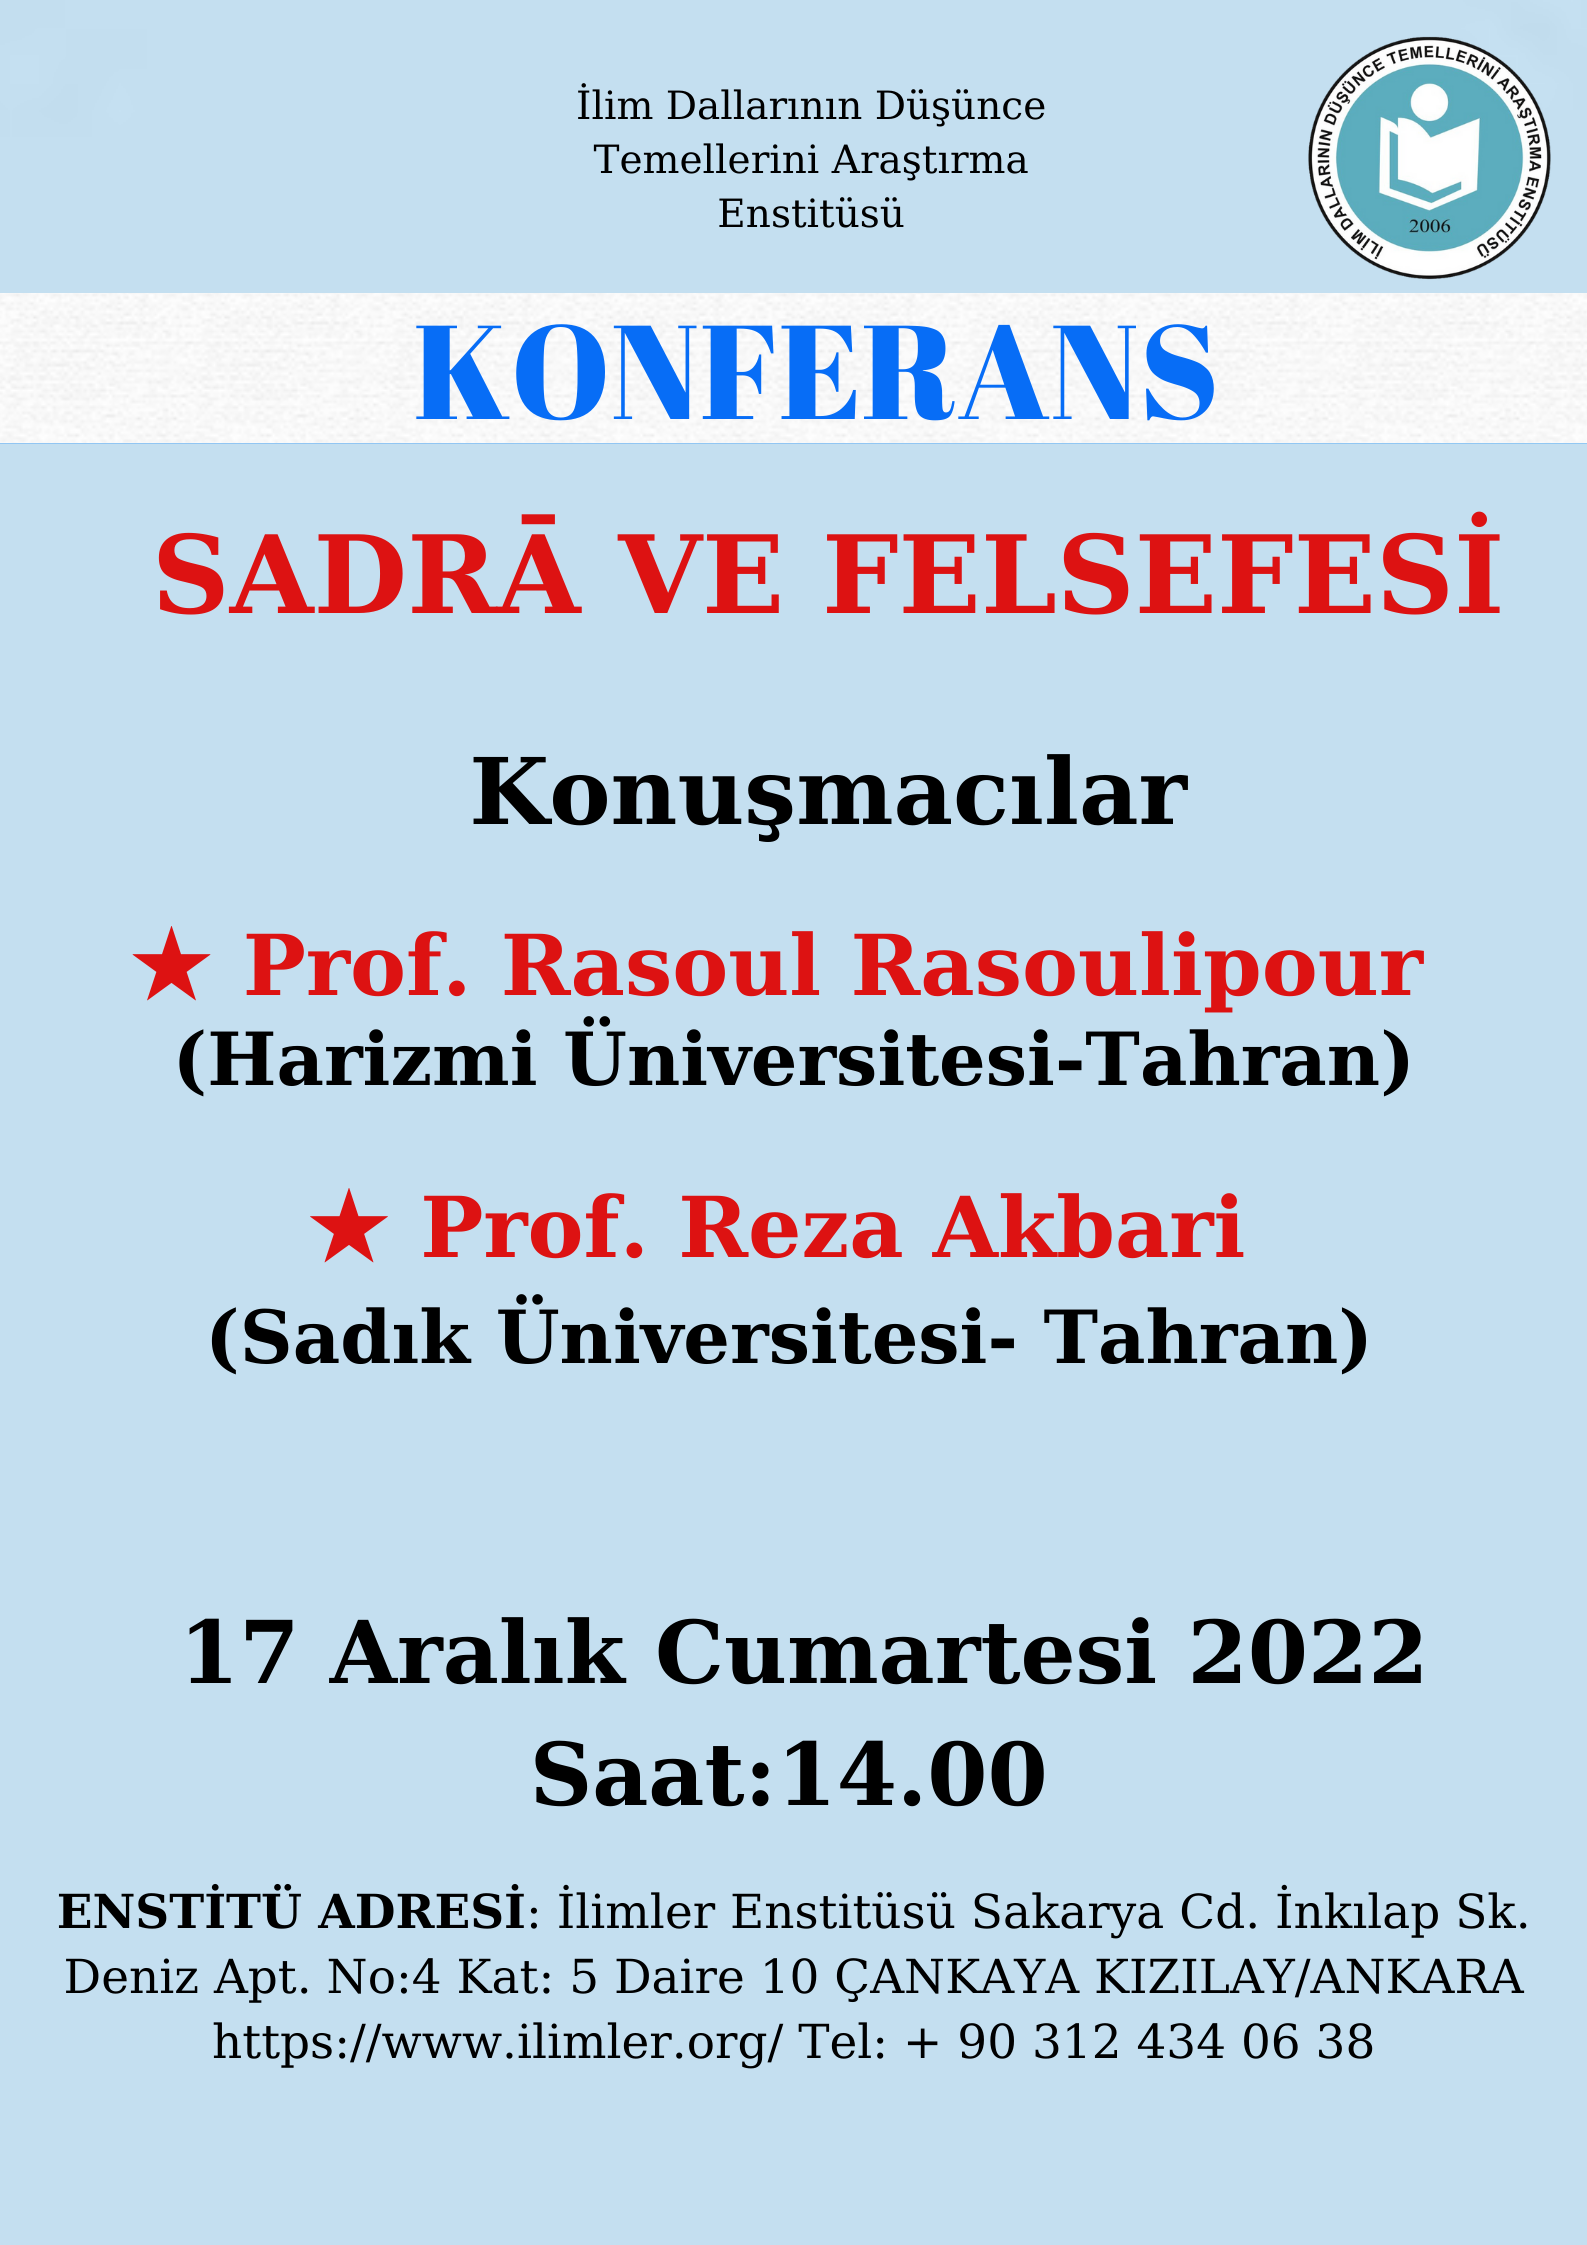 SADRĀ VE FELSEFESİ -Prof. Rasoul Rasoulipour - Prof. Reza Akbari - 17.12.2022